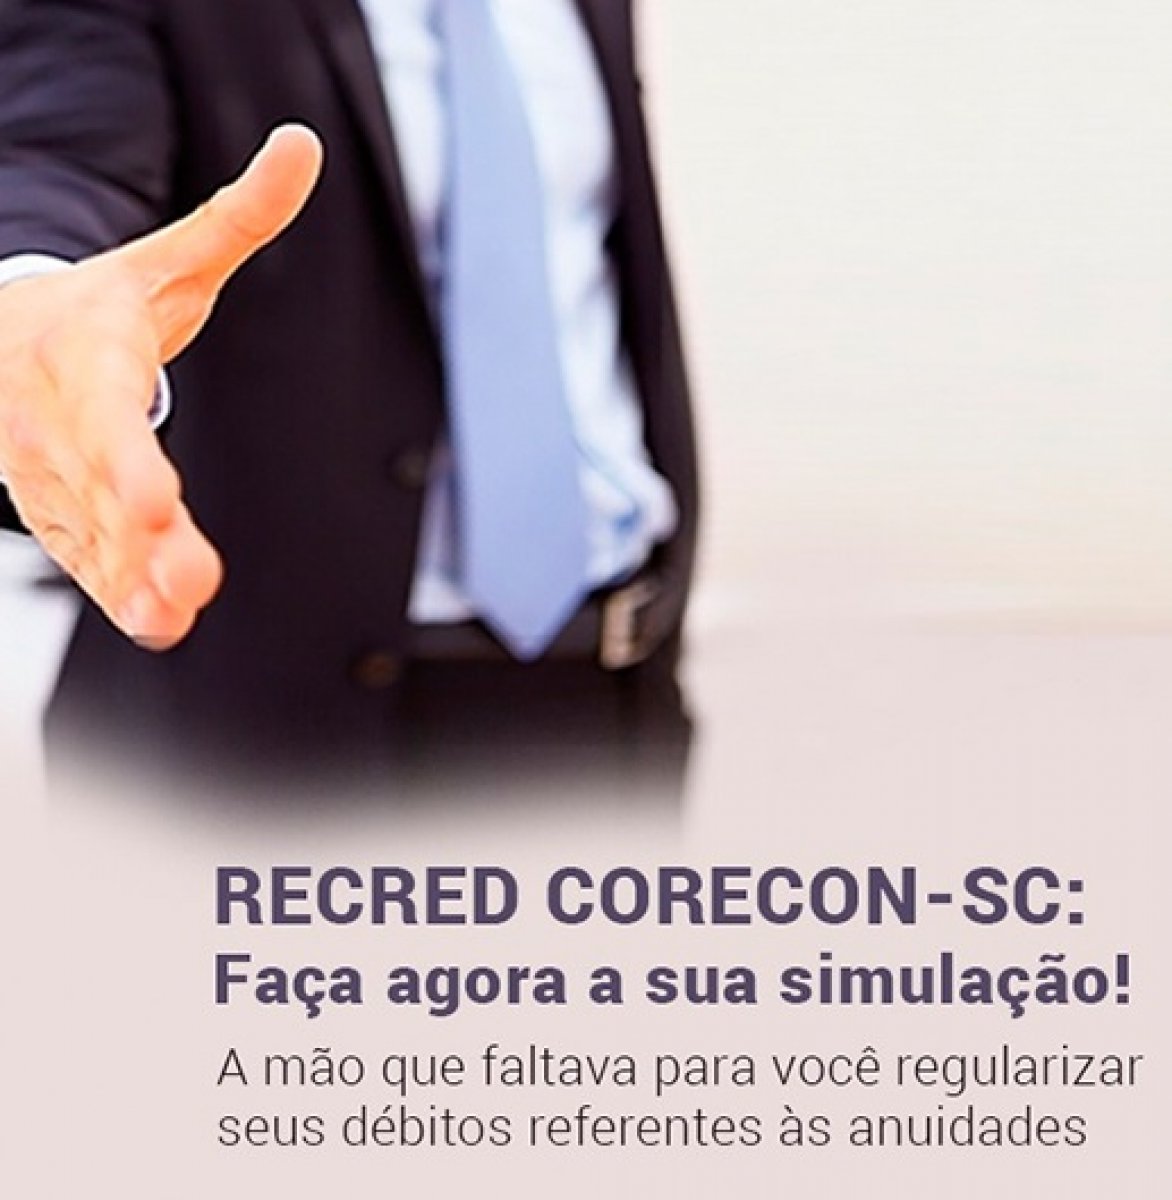 Corecon-SC adere à prorrogação do Recred até 31 de junho - Corecon/SC